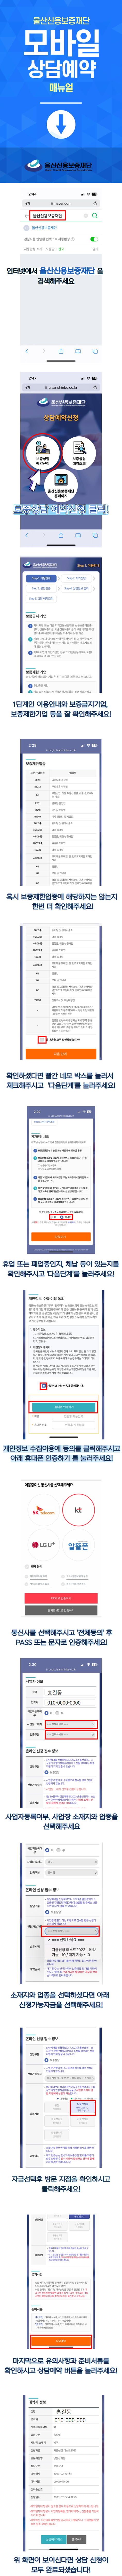 울산광역시 및 군·구 소상공인 경영안정자금 신청 방법 매뉴얼(휴대폰용)